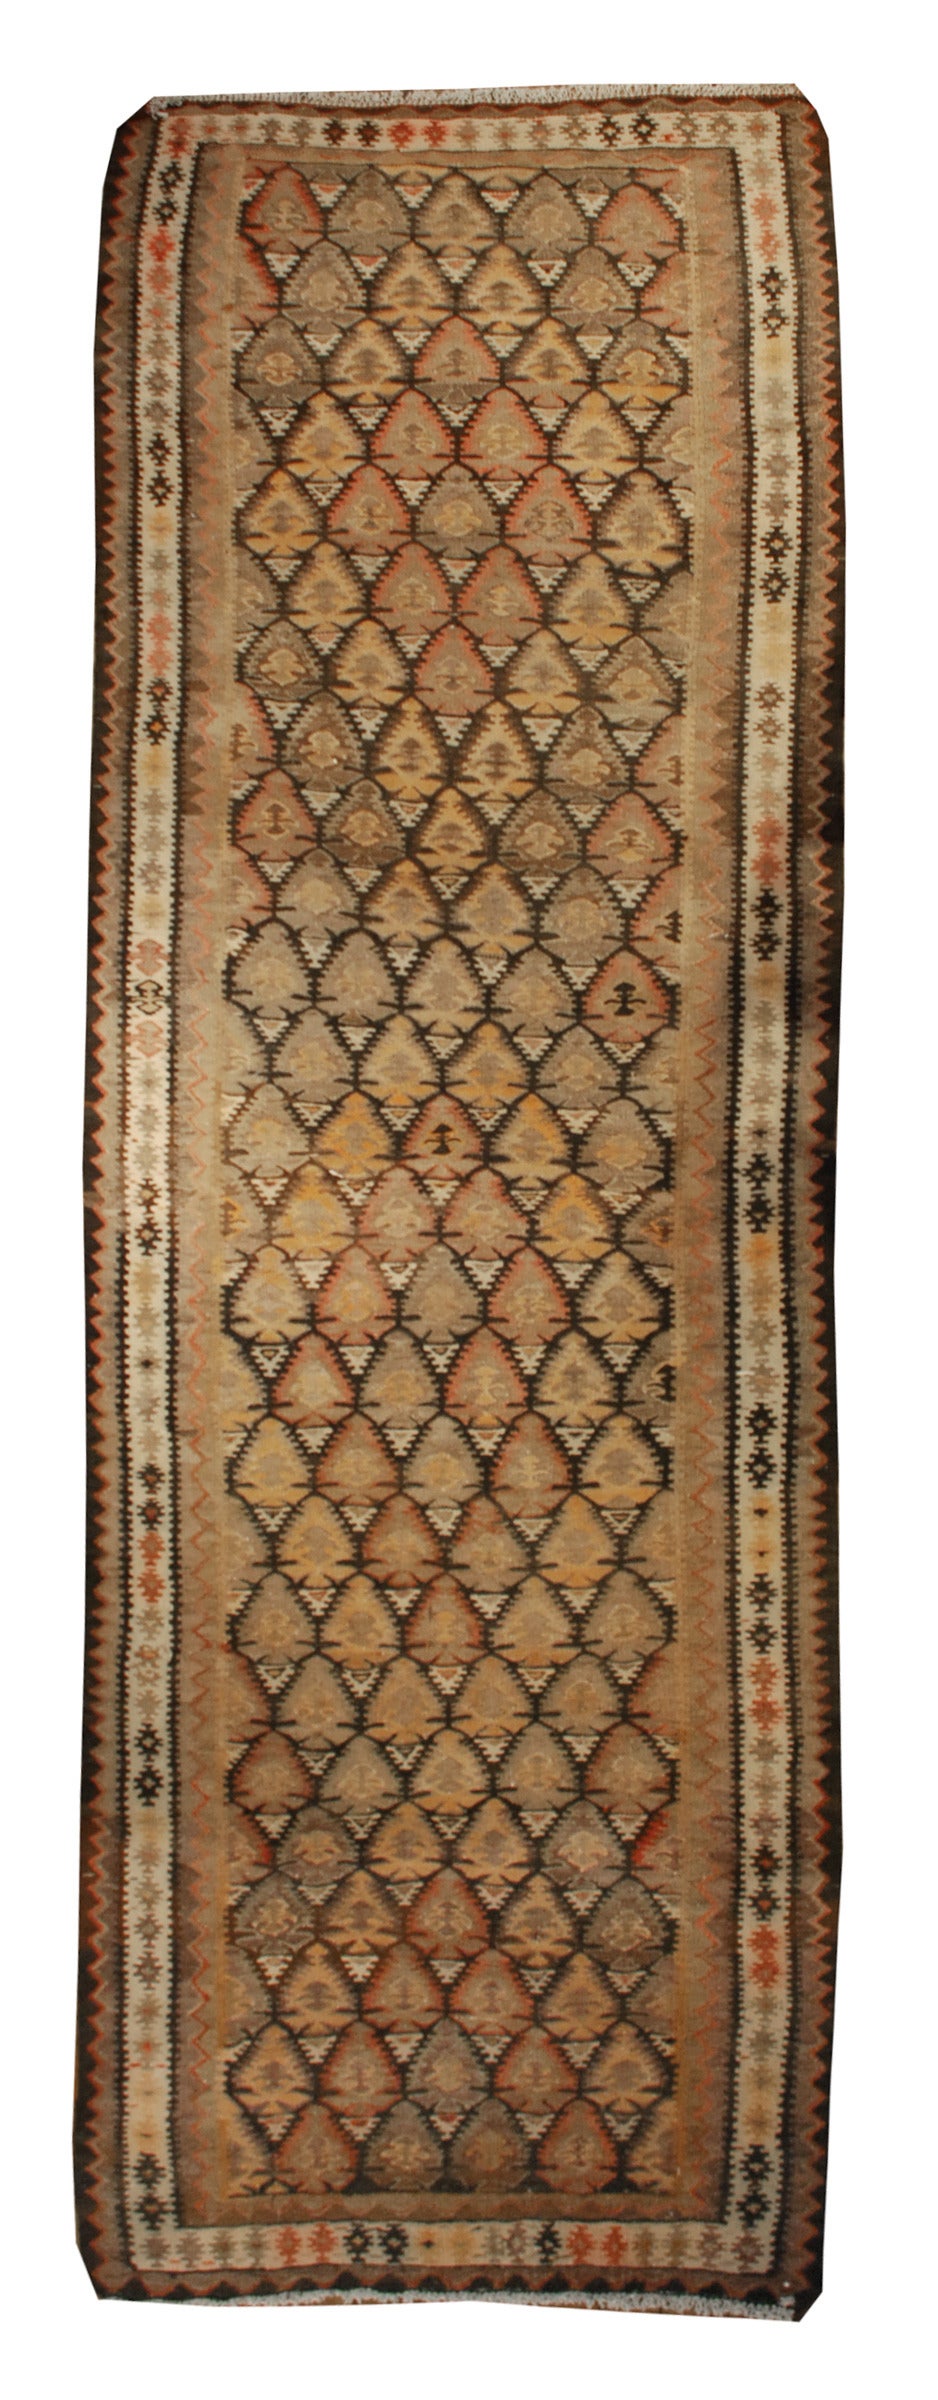 Tapis Kilim Persan Qazvin du début du 20ème siècle avec un magnifique motif d'arbre de vie, entouré de multiples bordures géométriques complémentaires.